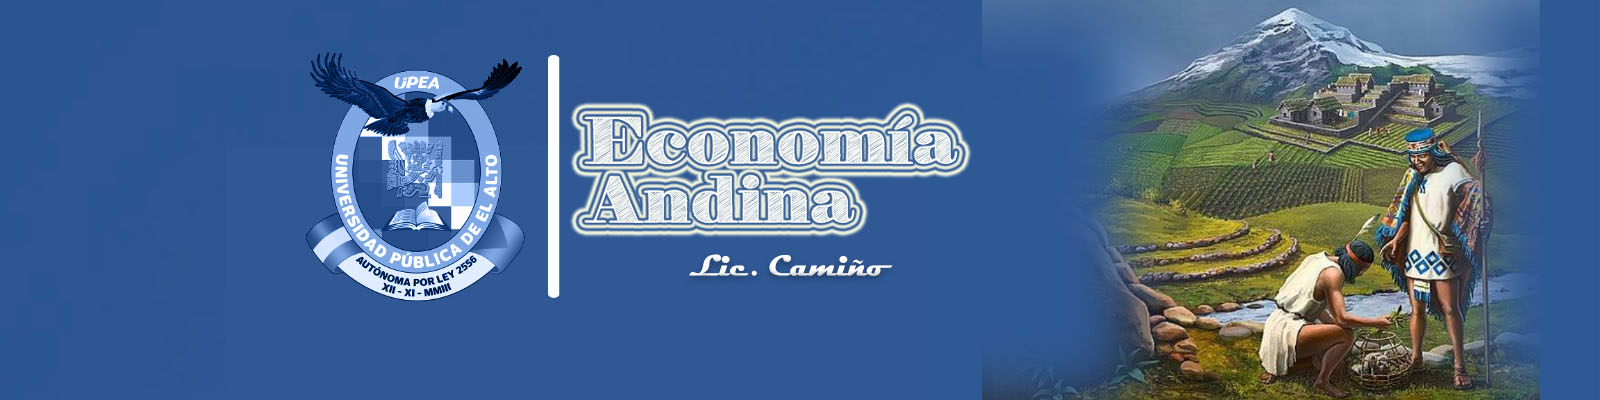 ECONOMIA ANDINA  Y COMUNITARIA VIACHA